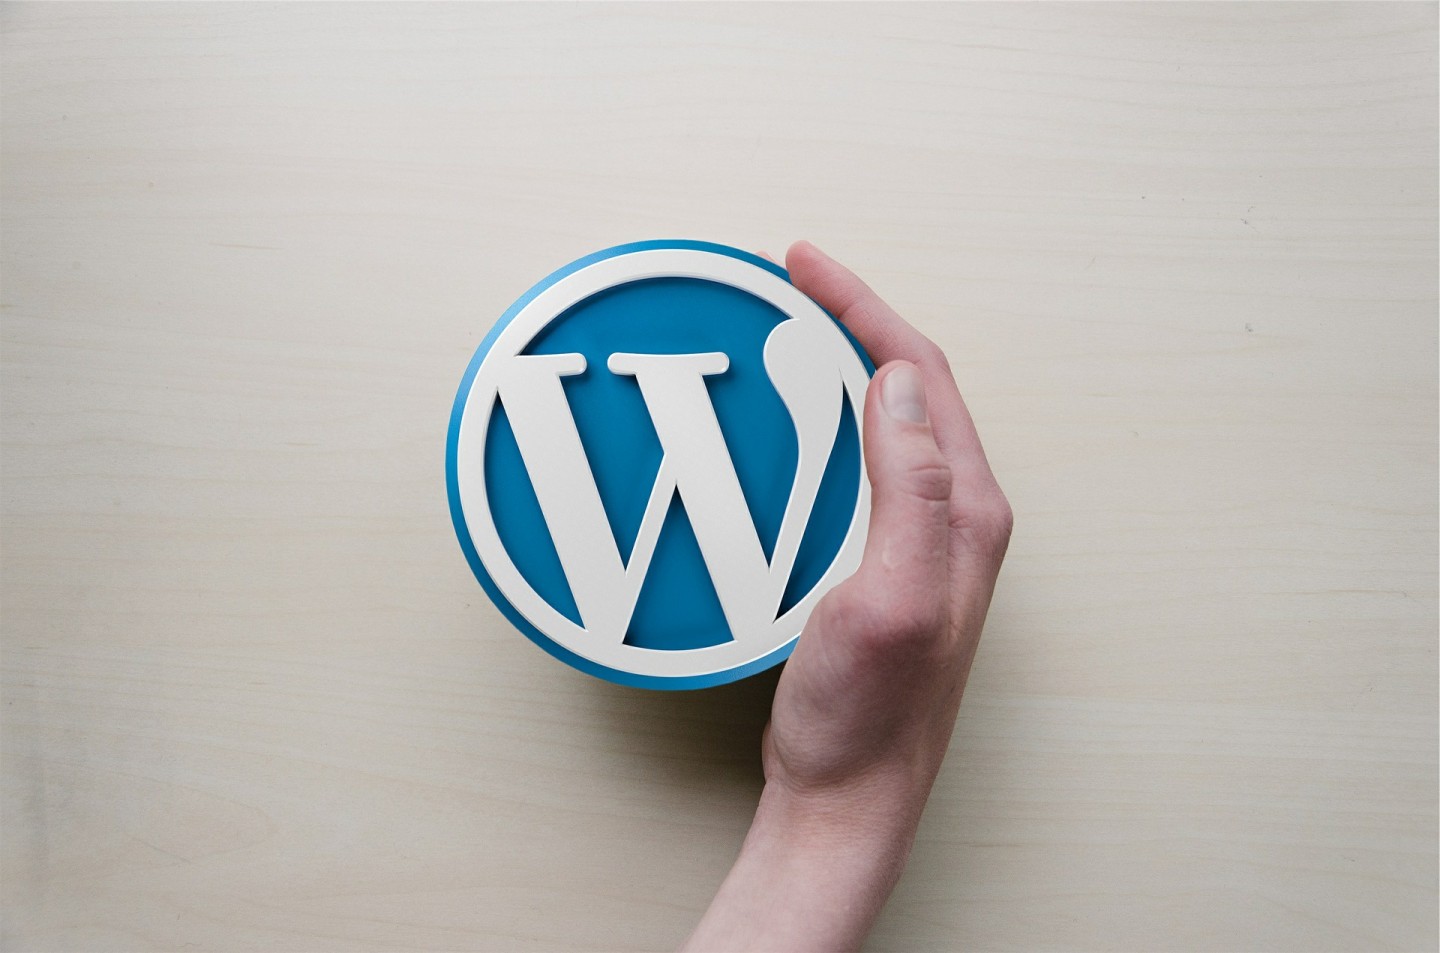 Pourquoi utiliser WordPress pour créer son site internet